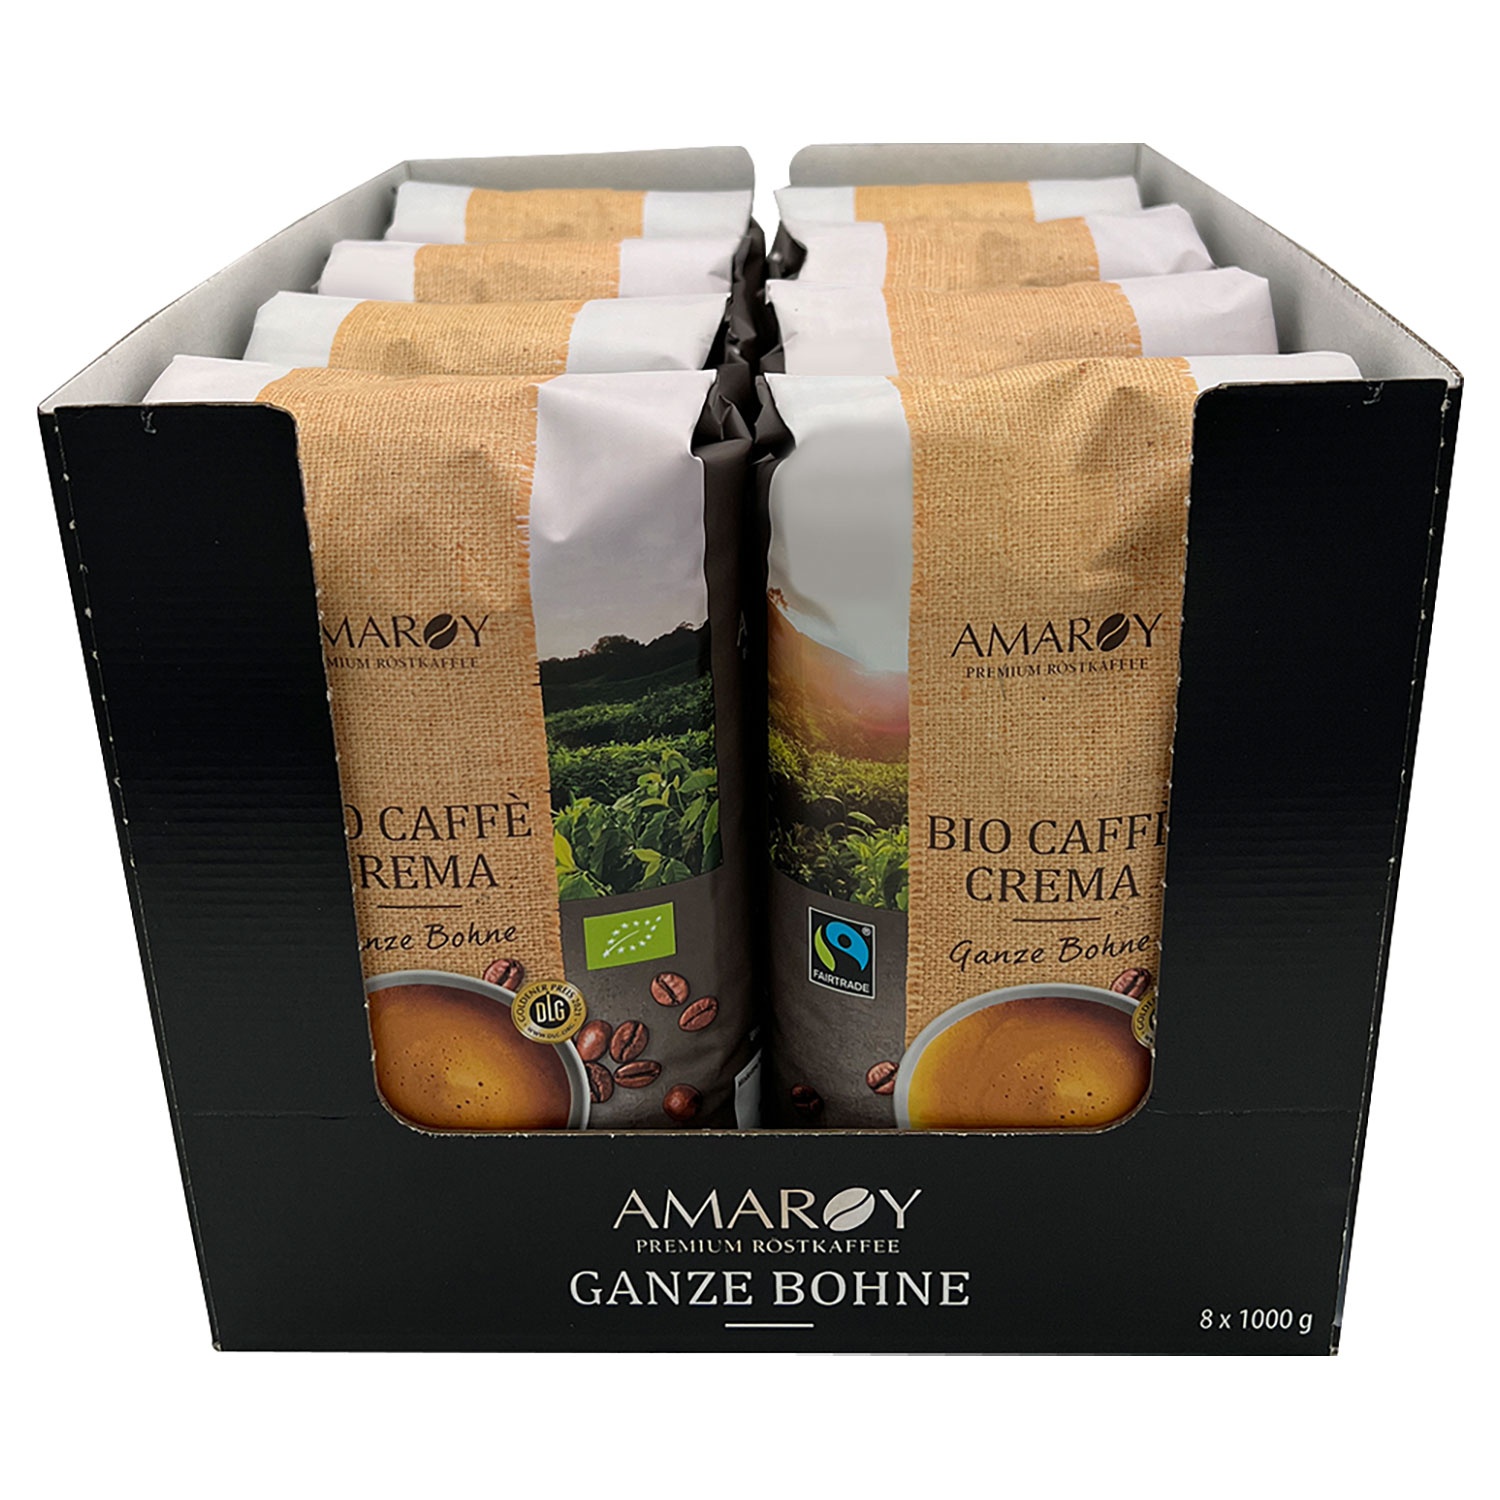 AMAROY Bio-Caffè Crema 1 kg